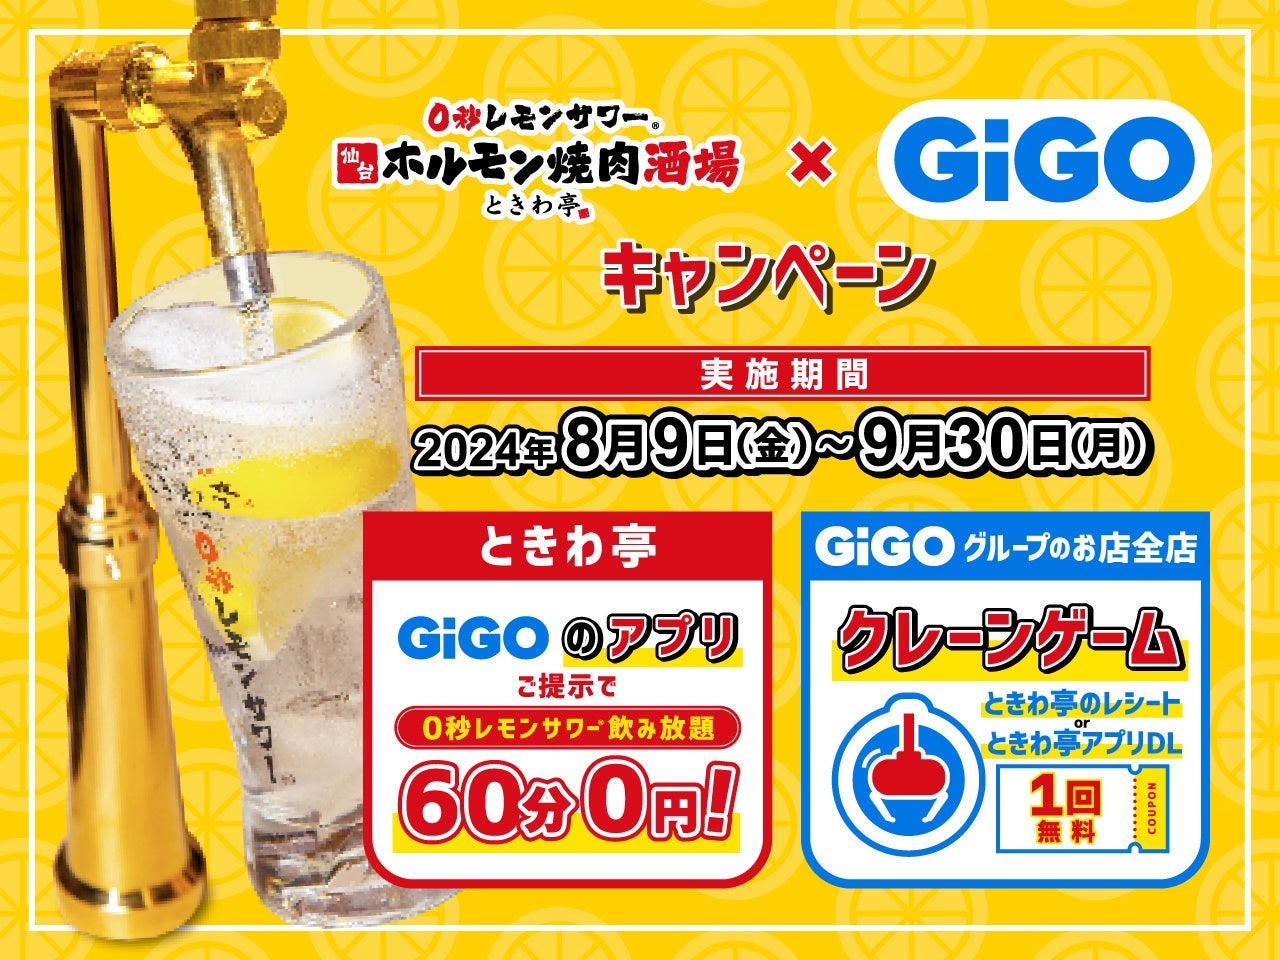 「GiGOアプリ」の提示で「0秒レモンサワー」が無料に「0秒レモンサワー®仙台ホルモン焼肉酒場 ときわ亭」コラボキャンペーン開催のお知らせ